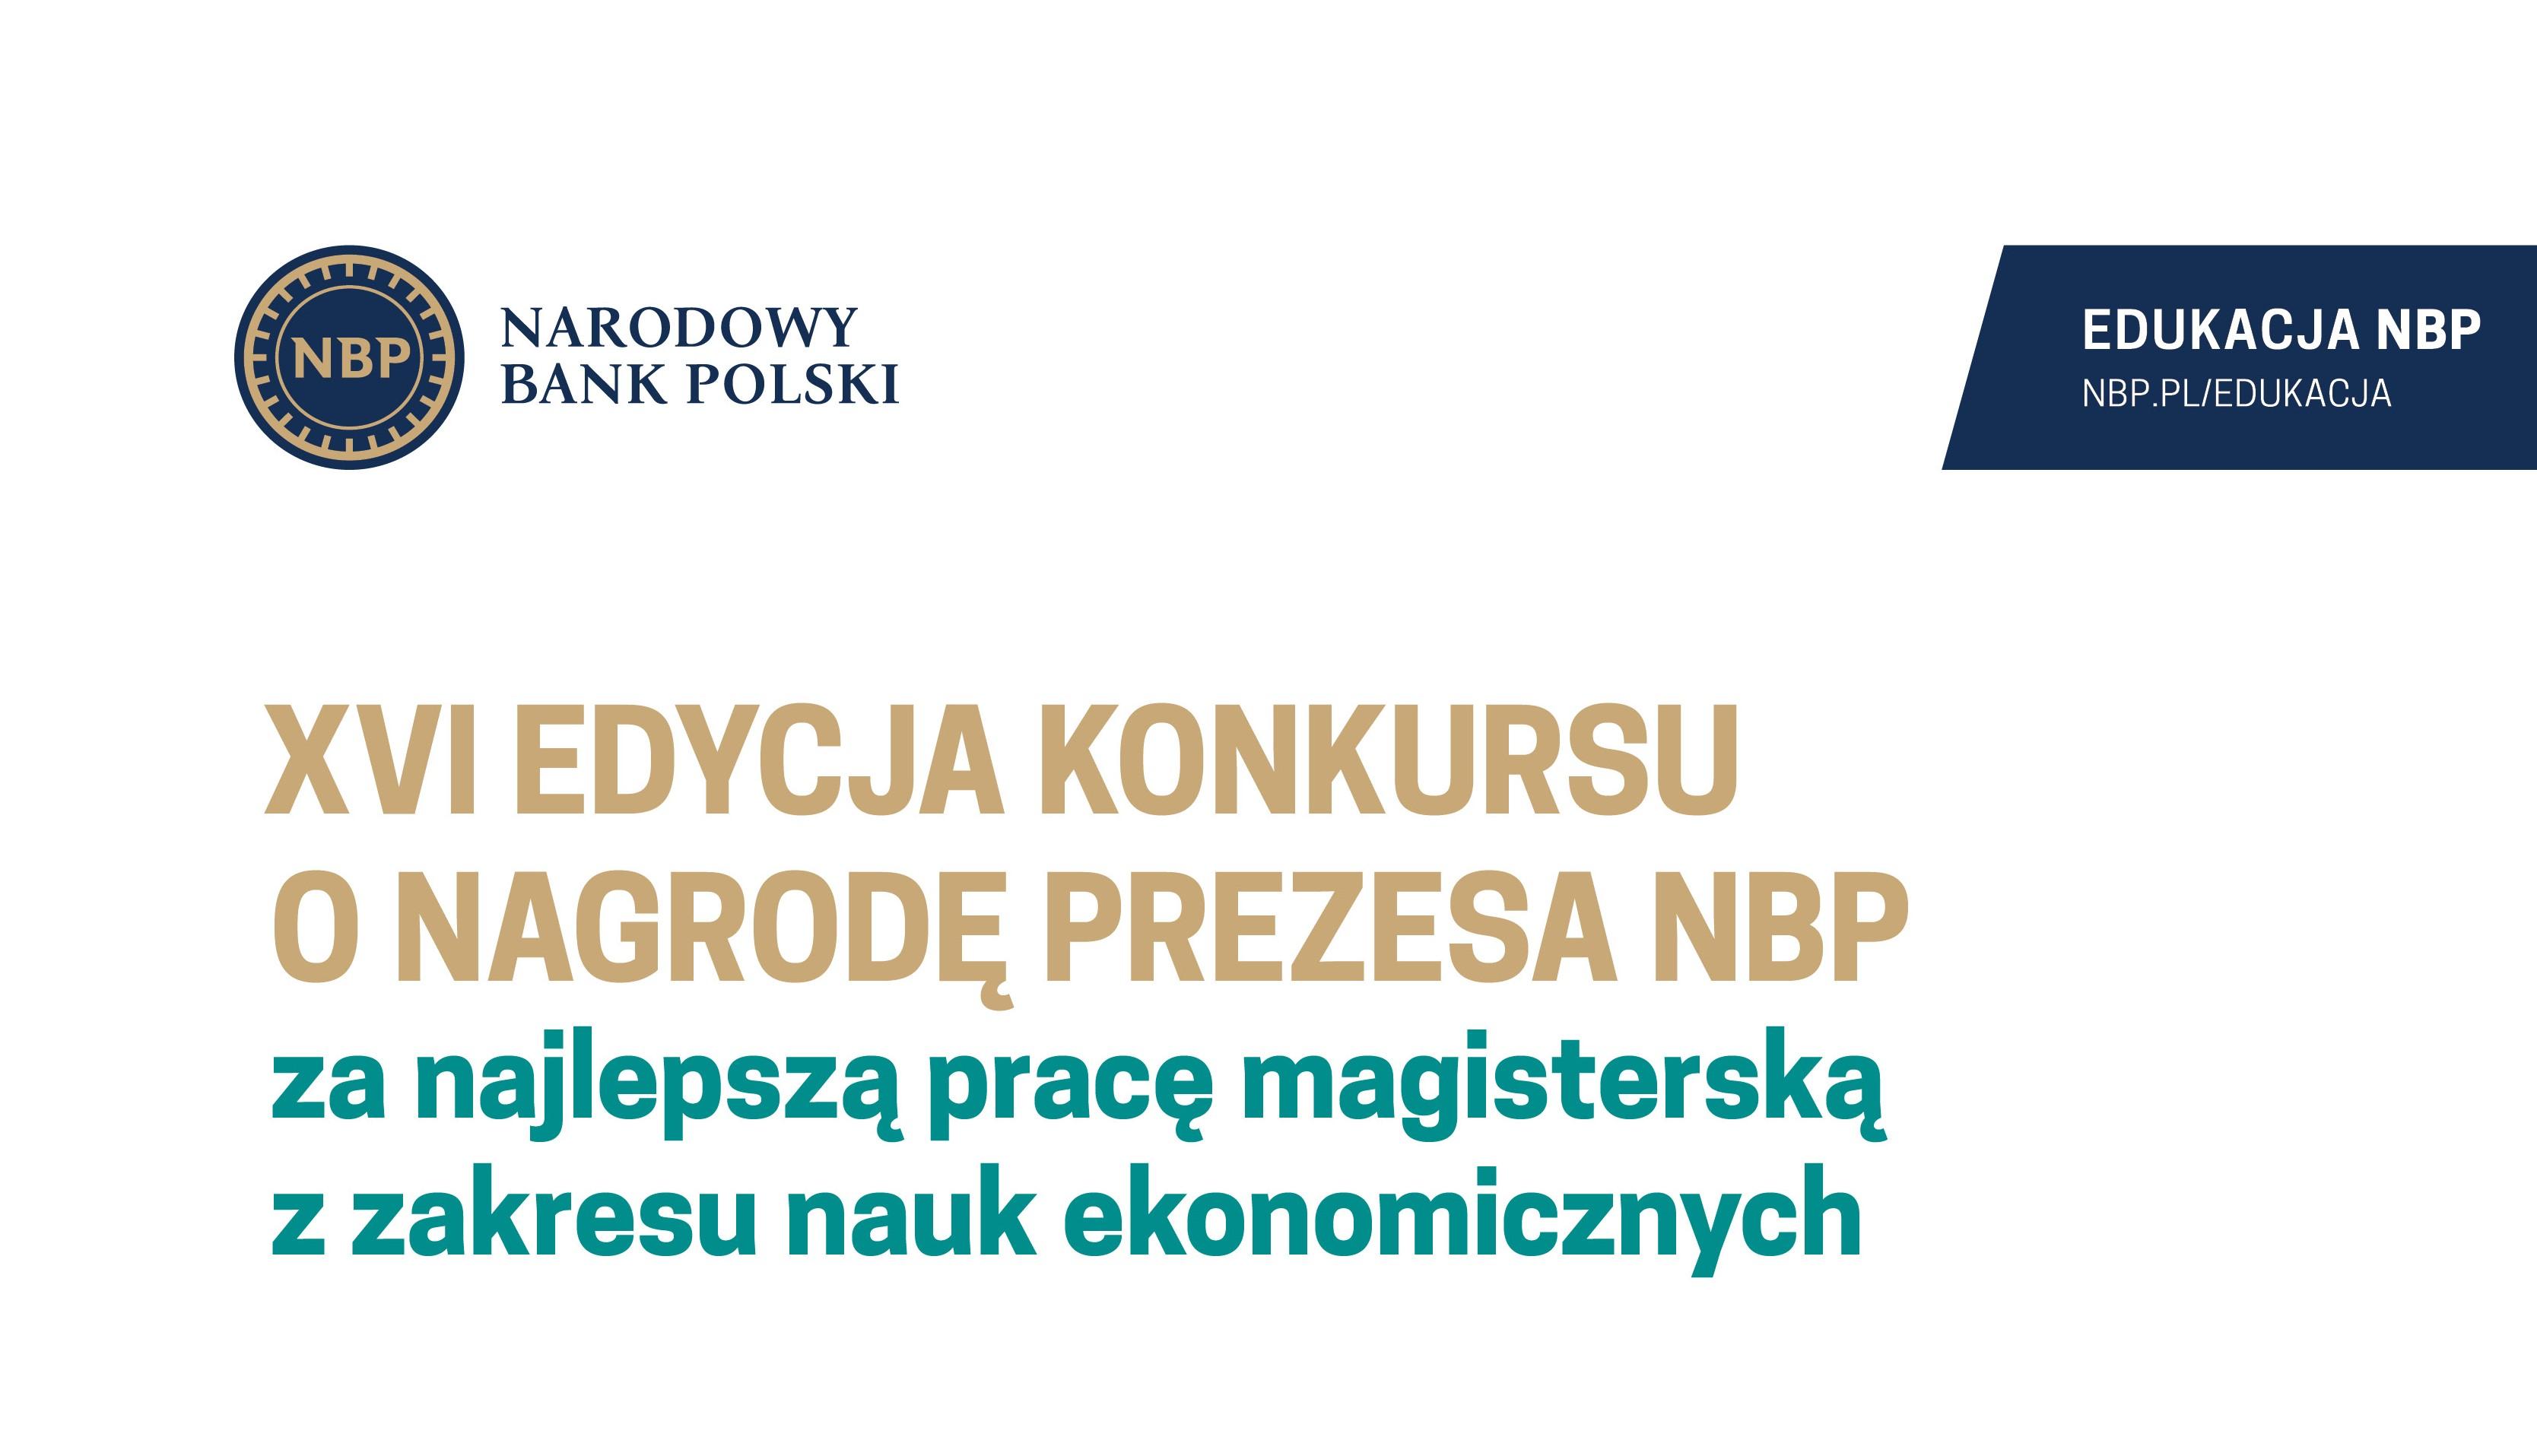 XVI edycja Konkursu o Nagrodę Prezesa NBP za najlepszą pracę magisterską z zakresu nauk ekonomicznych.